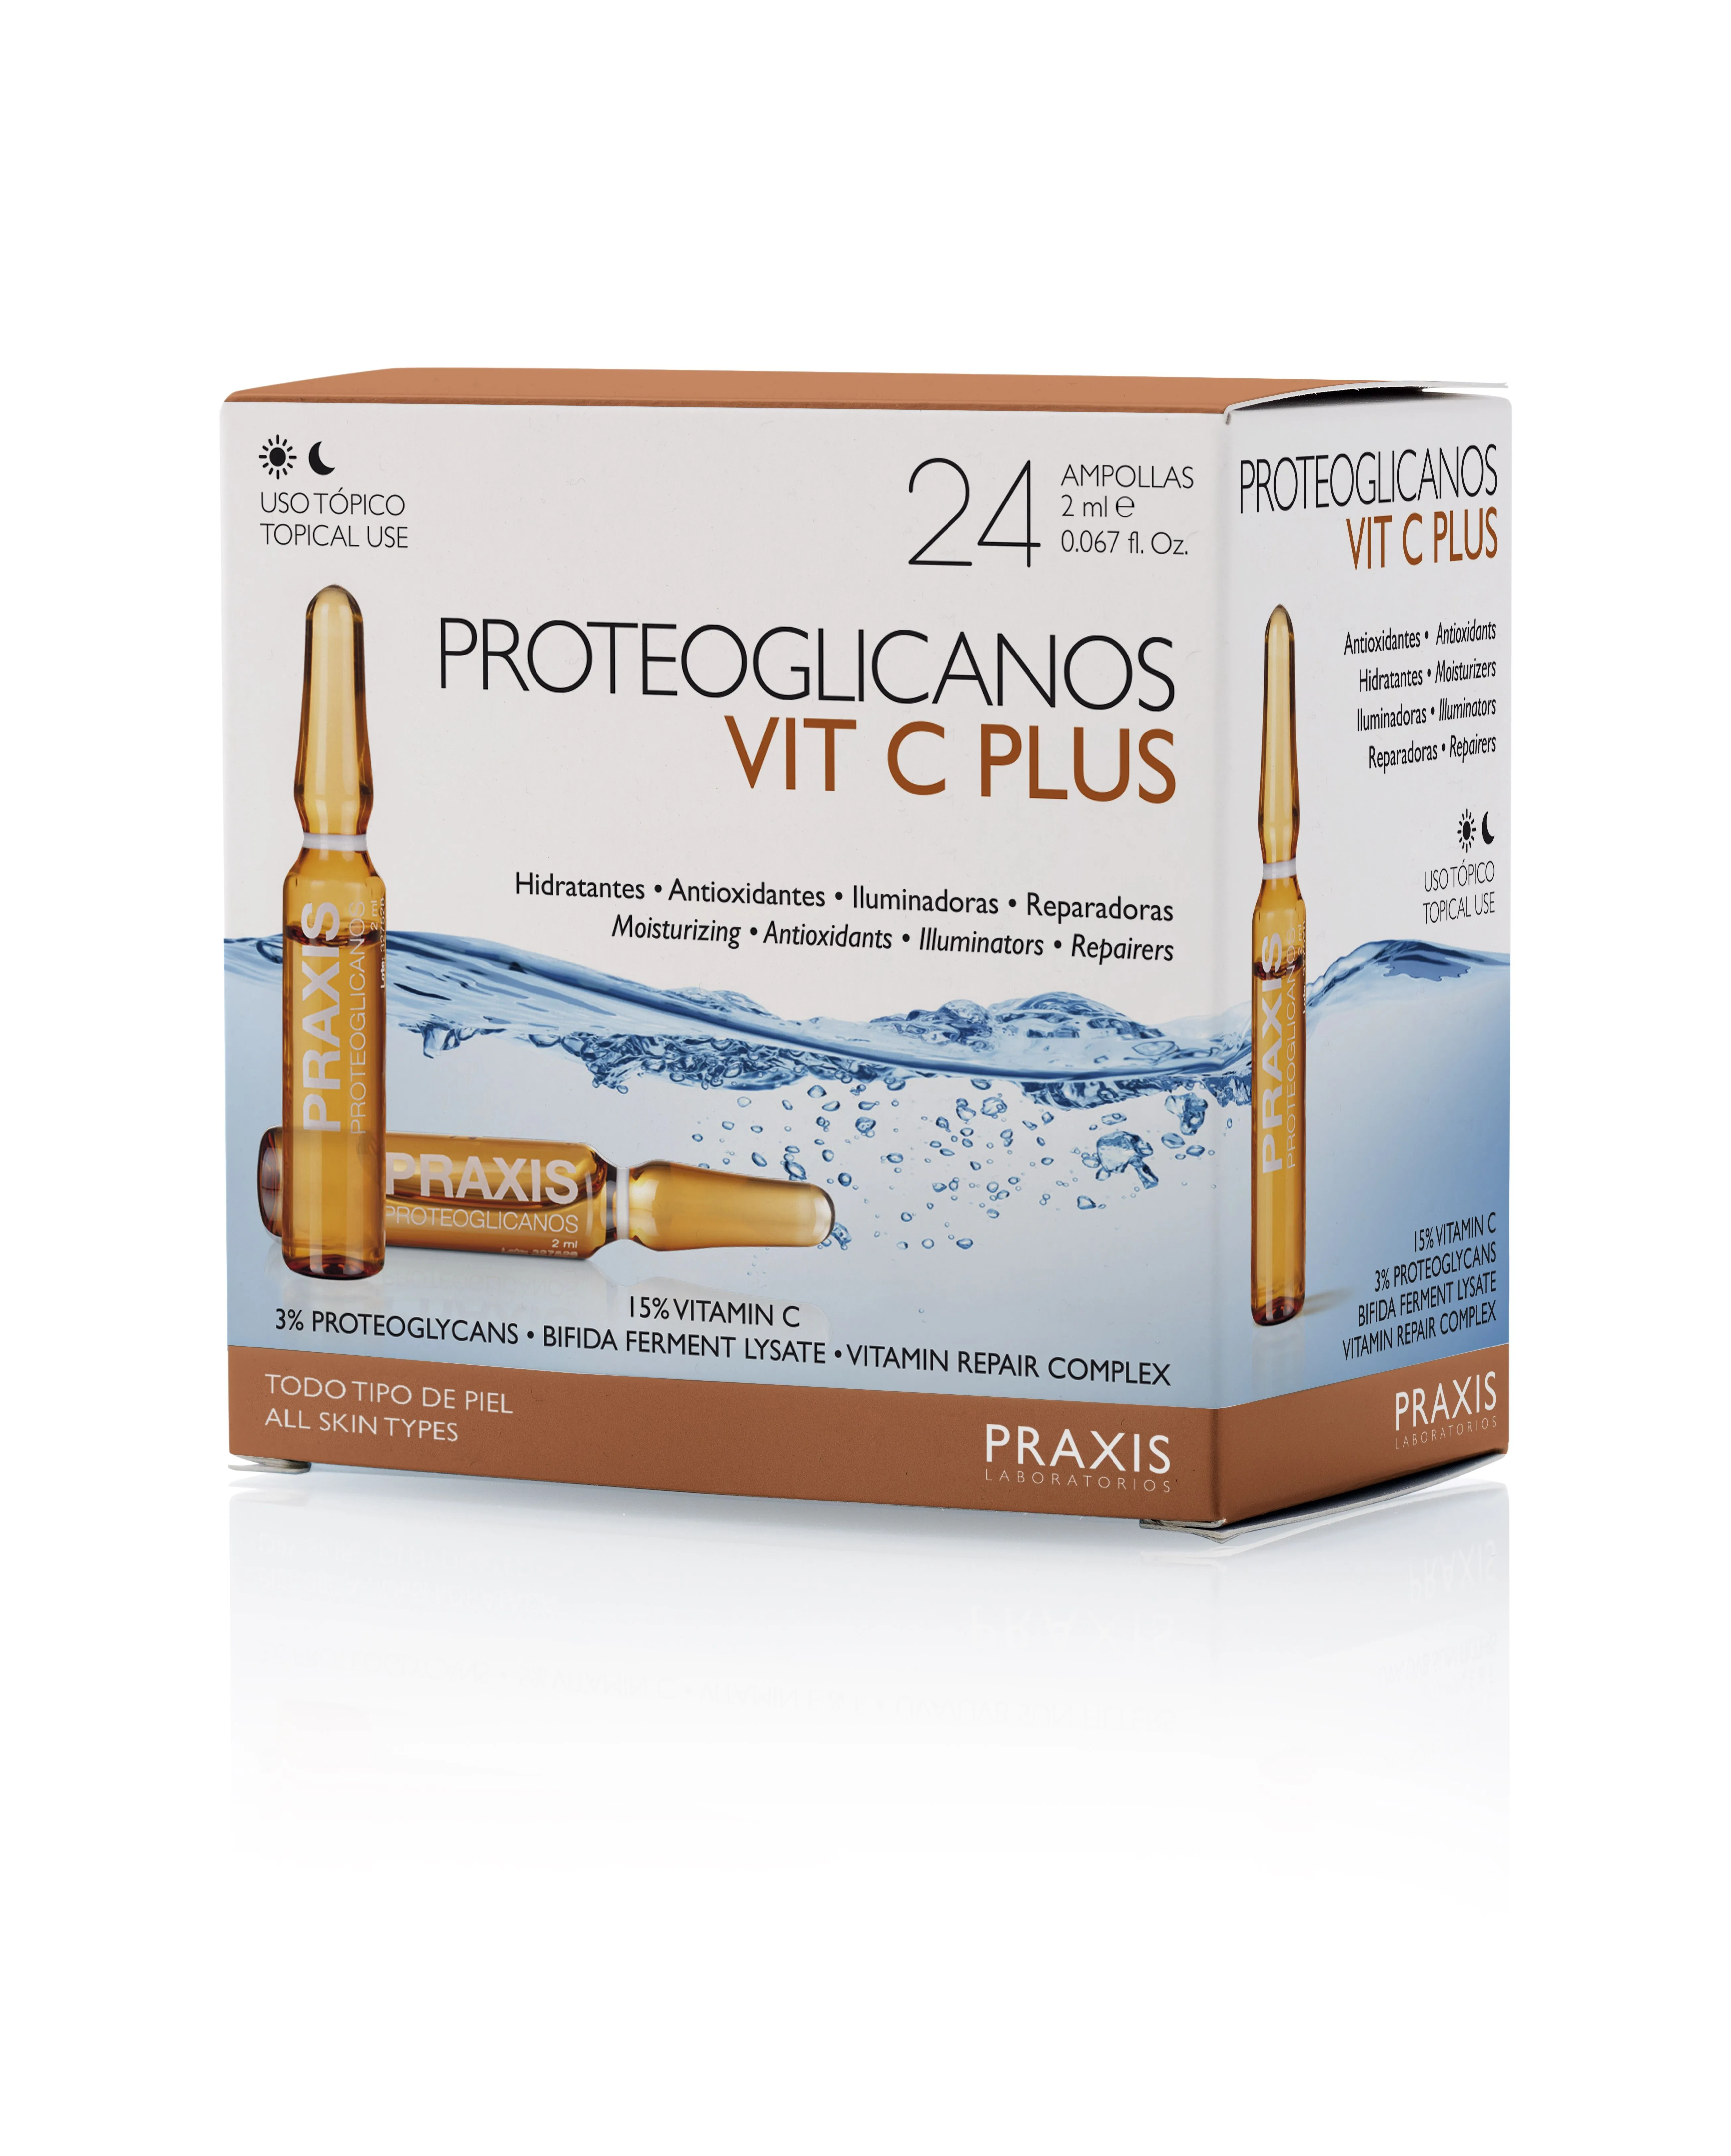 Proteoglicanos vitamin C 24x2ml